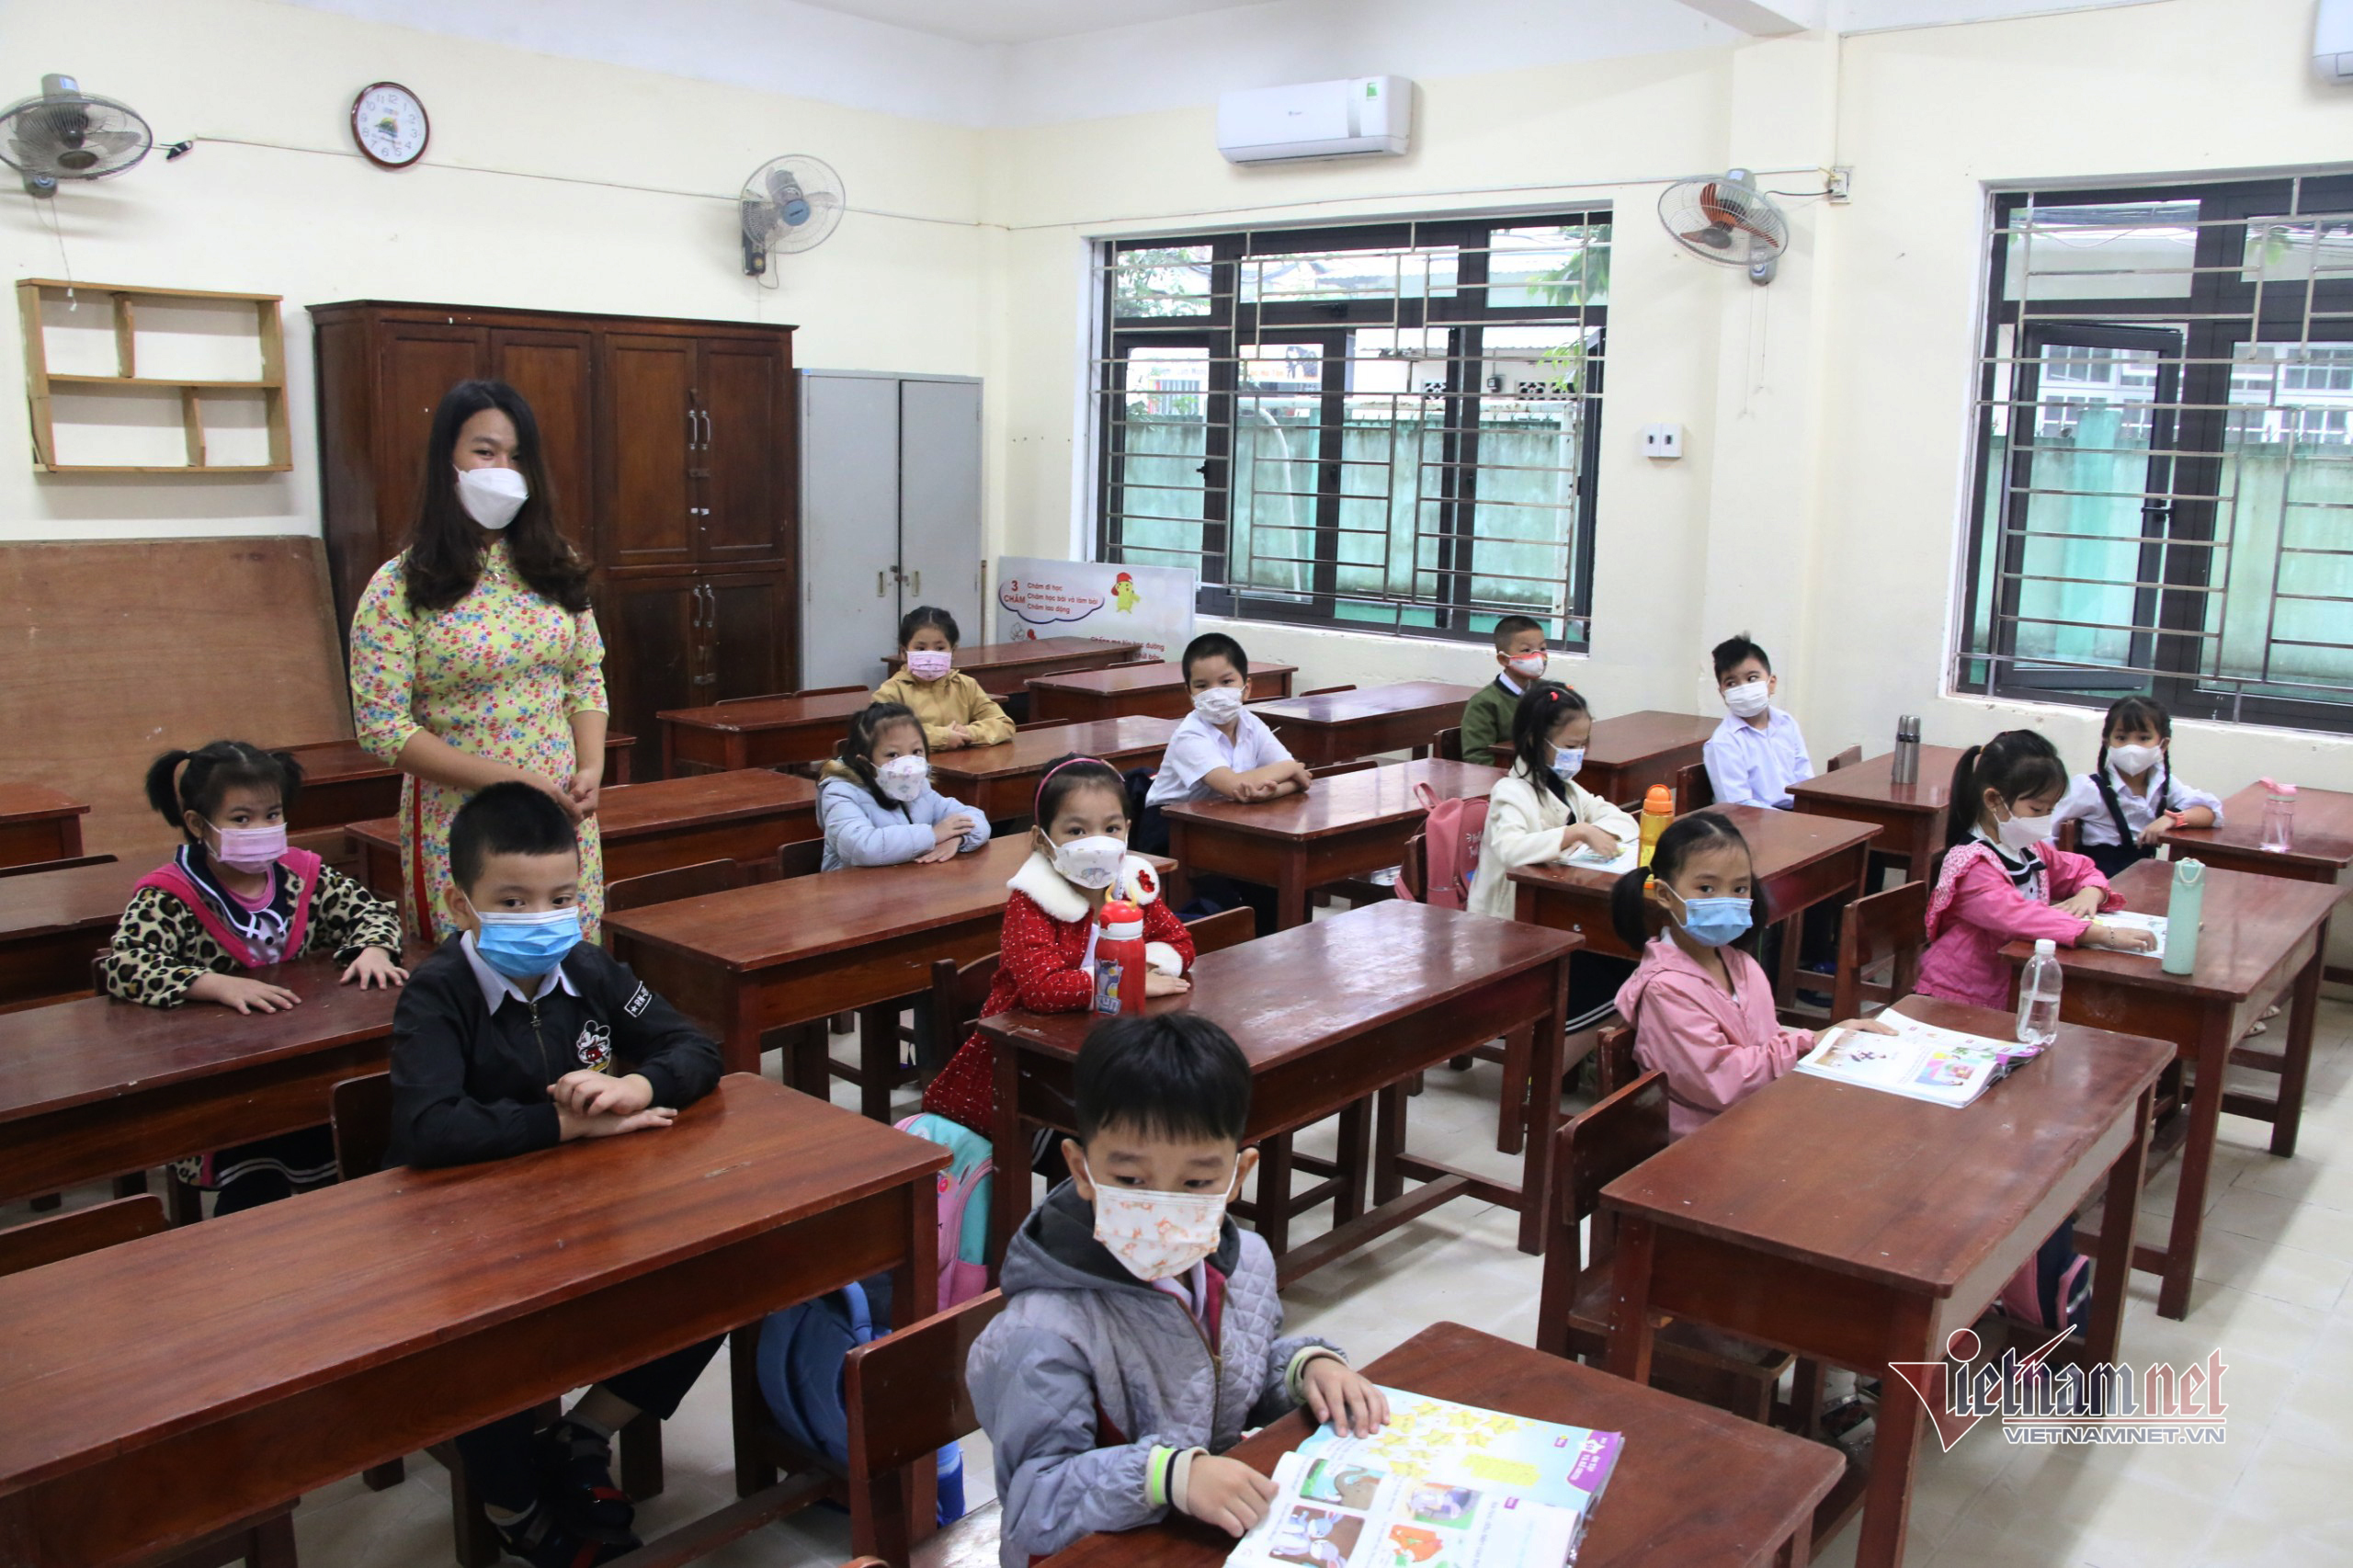 Ngày đầu học trực tiếp, nhiều phụ huynh lớp 1 ở Đà Nẵng chưa cho con đến lớp